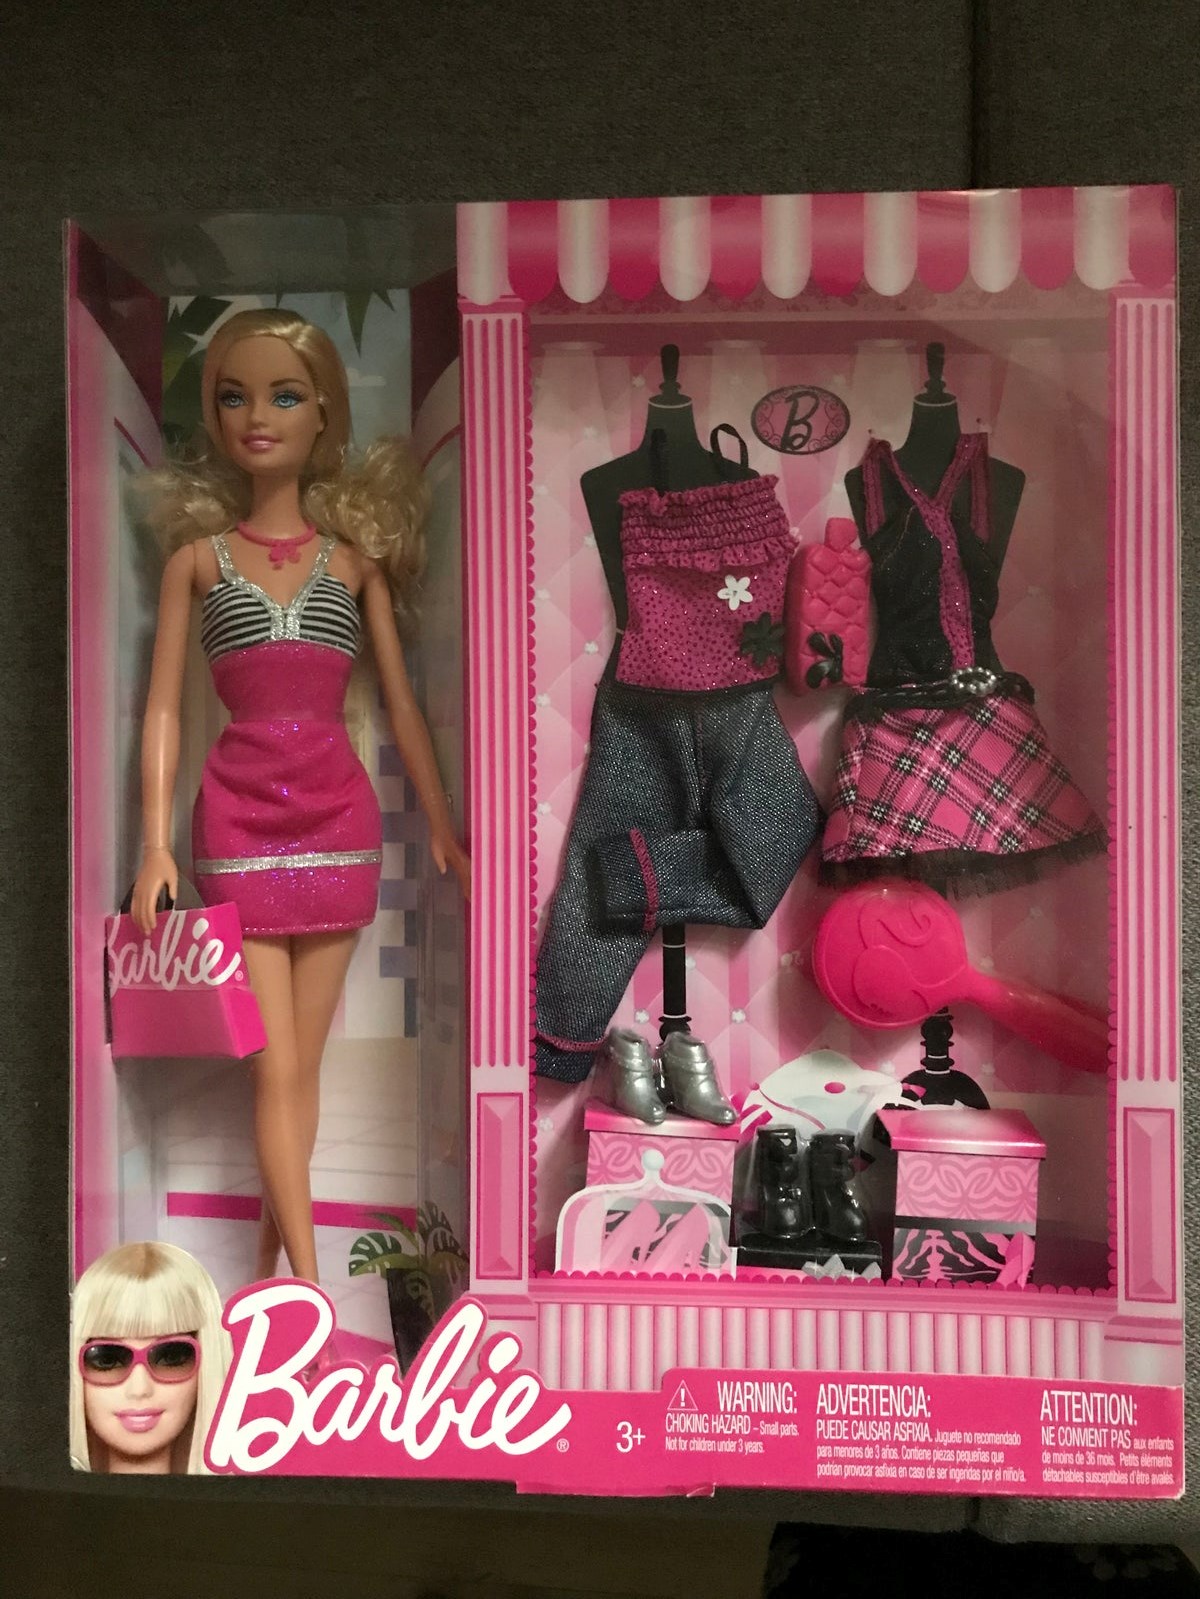 I Dronningmølle har Mette en ubrugt Barbie i æske til salg for 250 kroner. Du får både tøj og sko med i prisen.